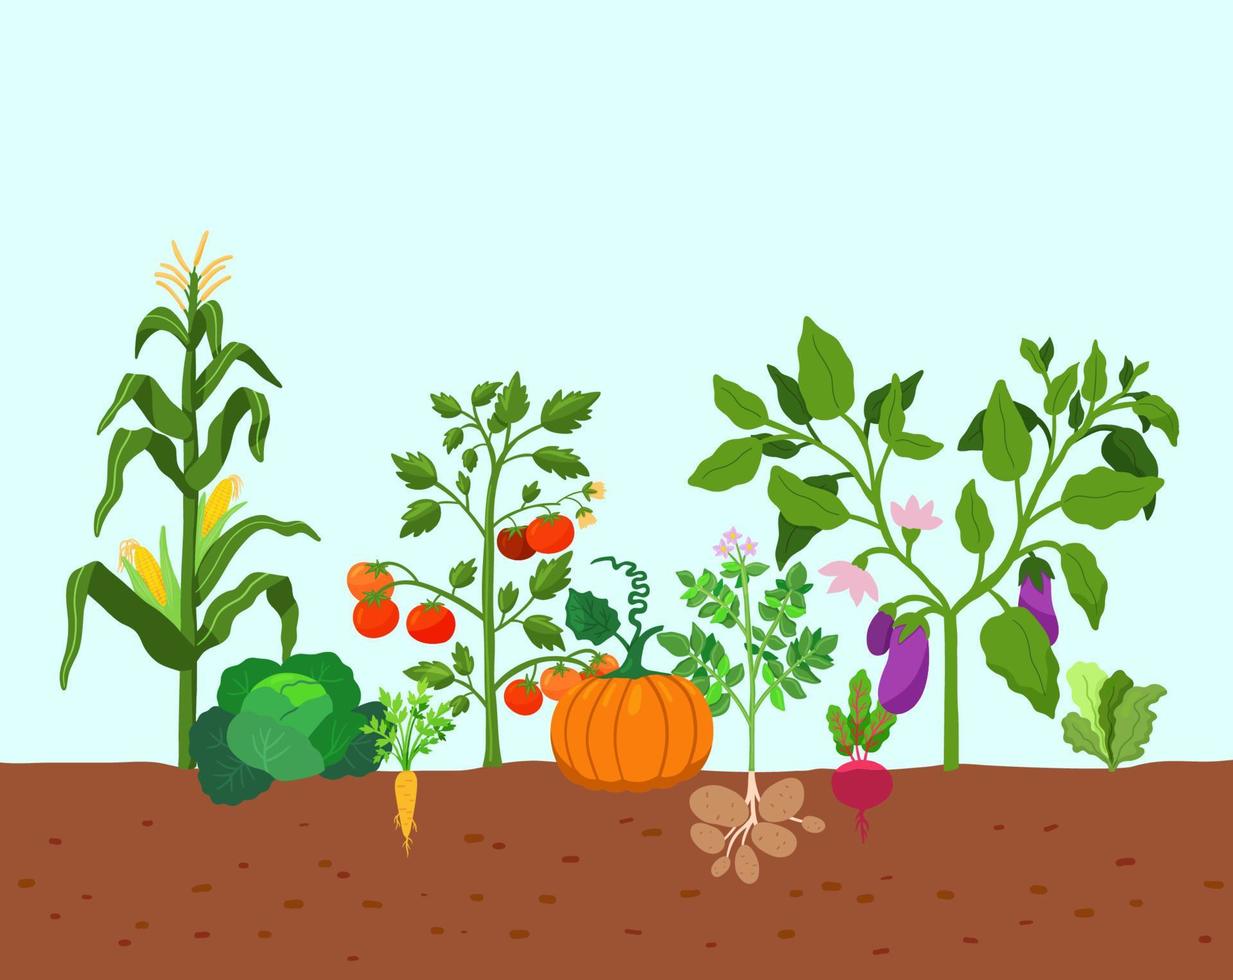 skörd av grönsaker potatis, majs, pumpor, tomater och olika grönsaker i marken. vektor illustration i platt stil. gårdsodling av grönsaker.